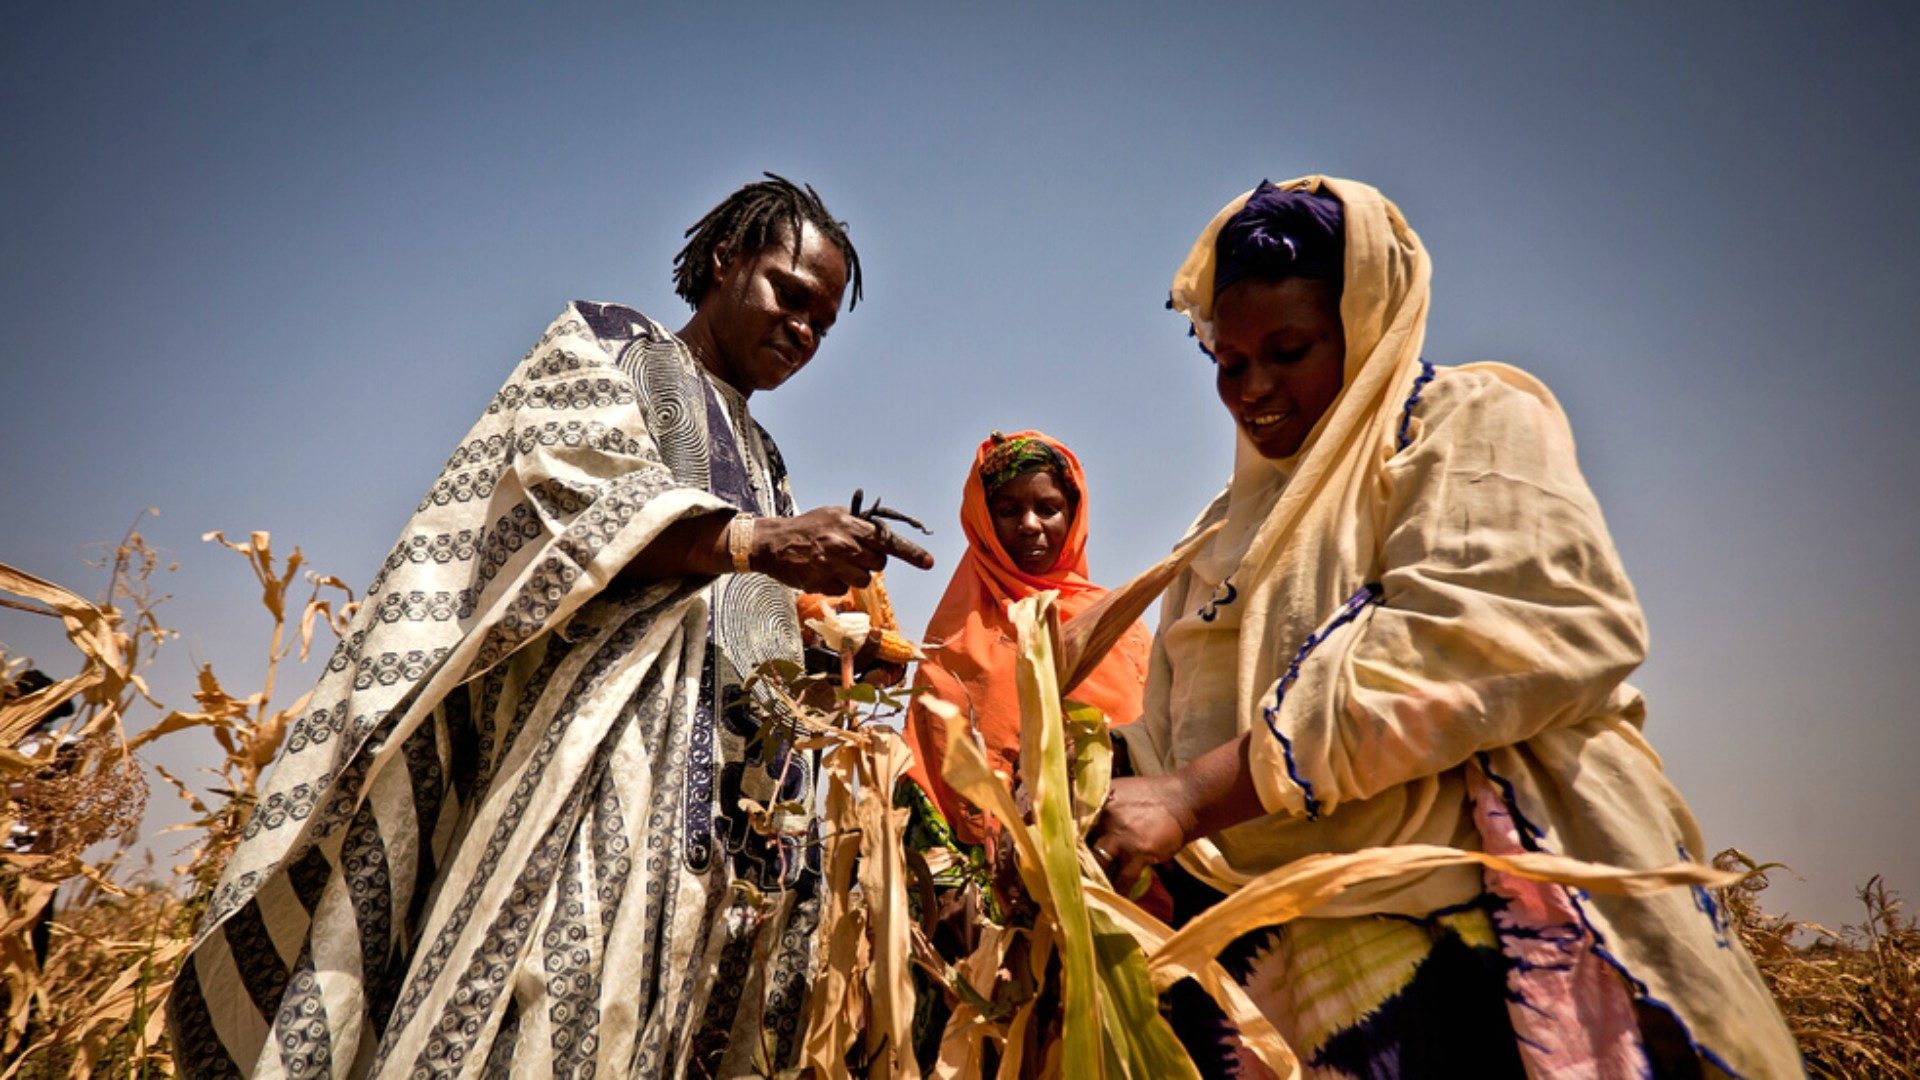 Les sécheresses ont causé des famines dans plusieurs régions d'Afrique (Photo:Oxfam/Flickr/CC BY-NC-ND 2.0)